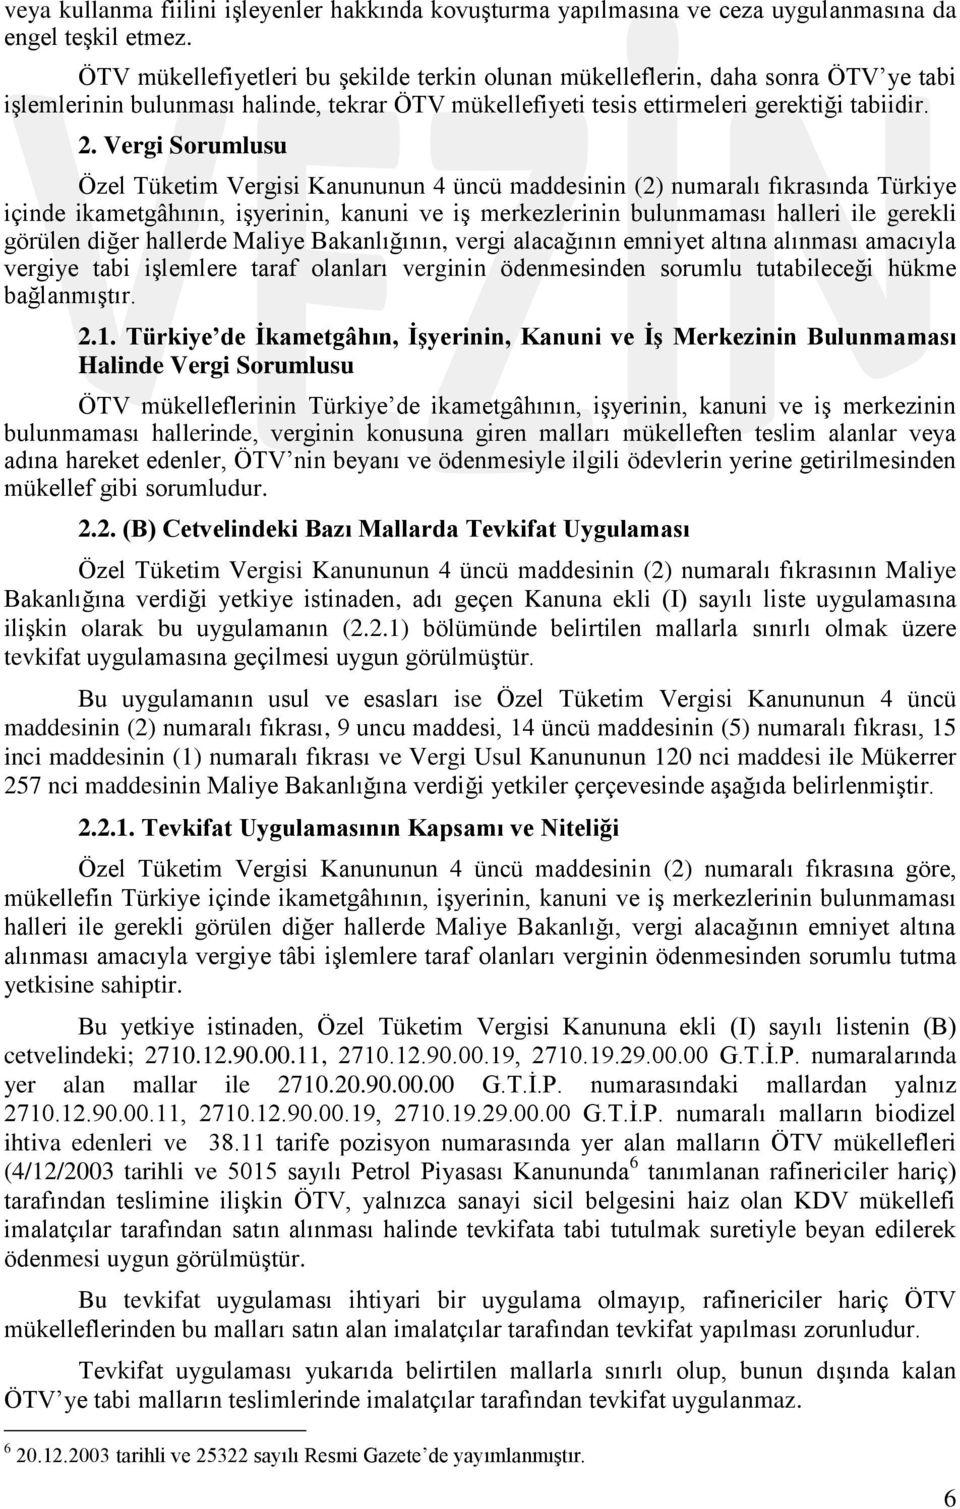 Vergi Sorumlusu Özel Tüketim Vergisi Kanununun 4 üncü maddesinin (2) numaralı fıkrasında Türkiye içinde ikametgâhının, iģyerinin, kanuni ve iģ merkezlerinin bulunmaması halleri ile gerekli görülen